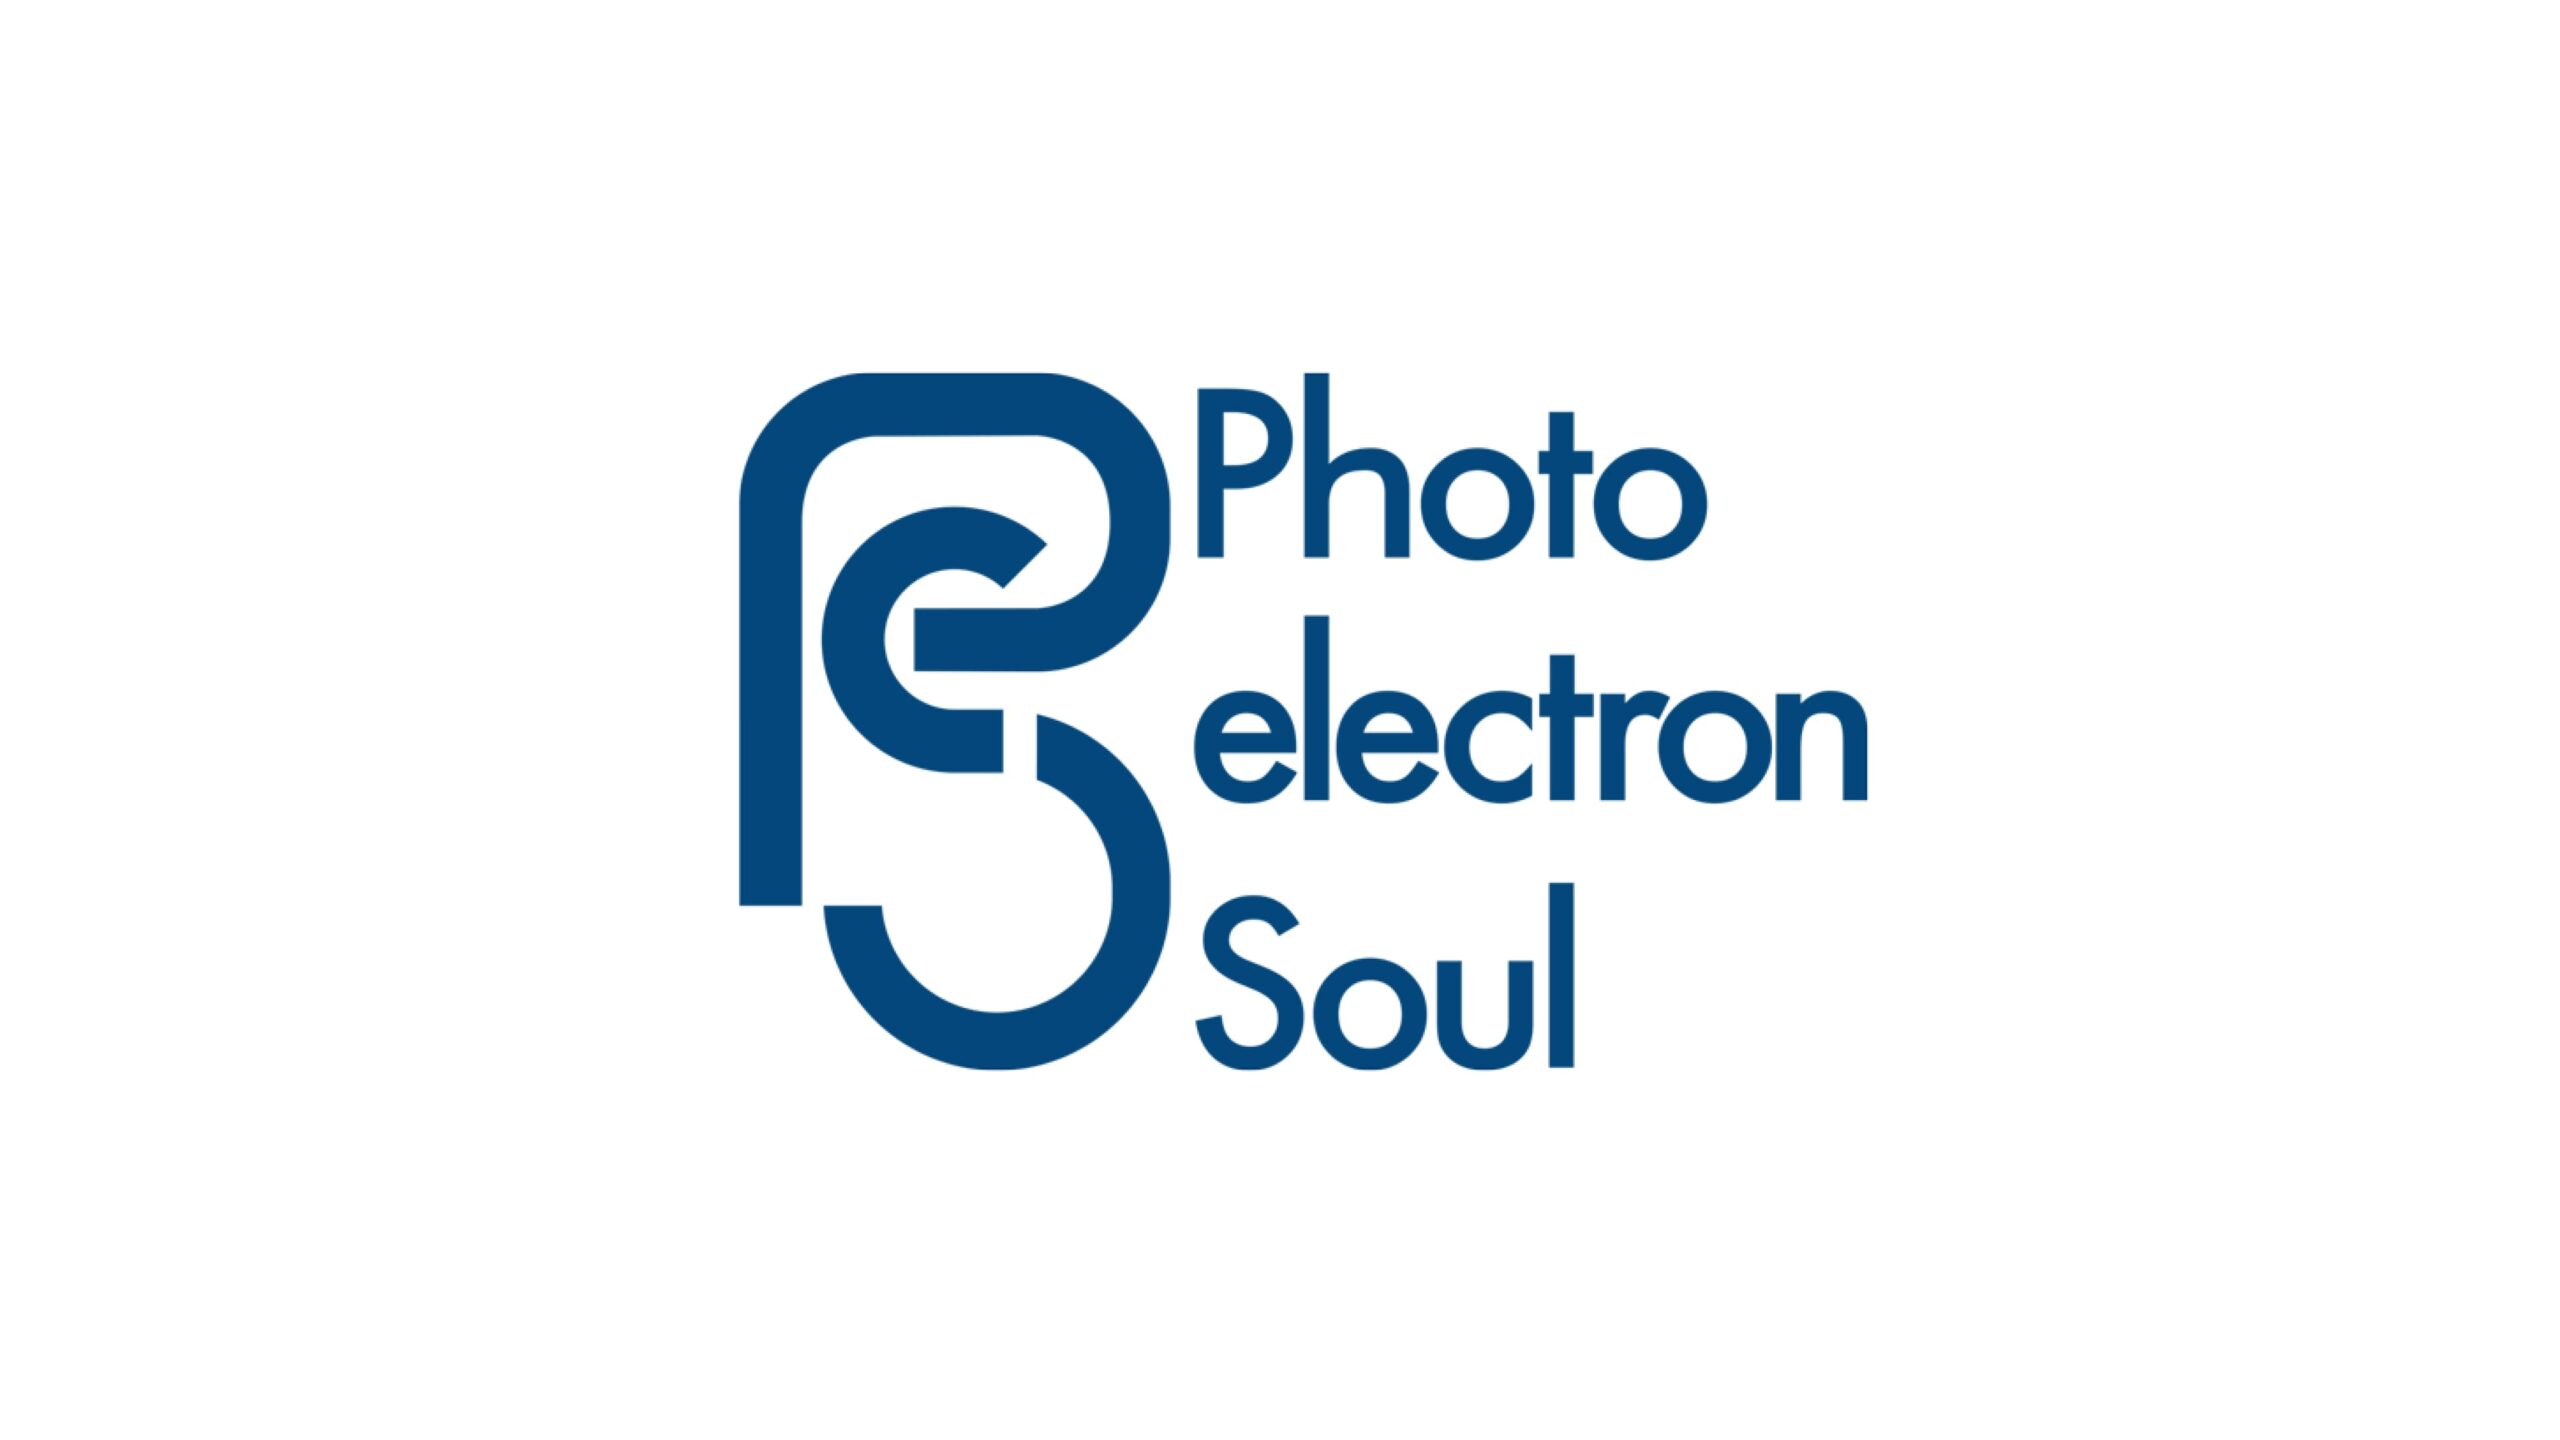 名古屋大学発スタートアップの株式会社Photo electron Soul、7.3億円を調達の資金調達を実施ー累計調達額約30億円に